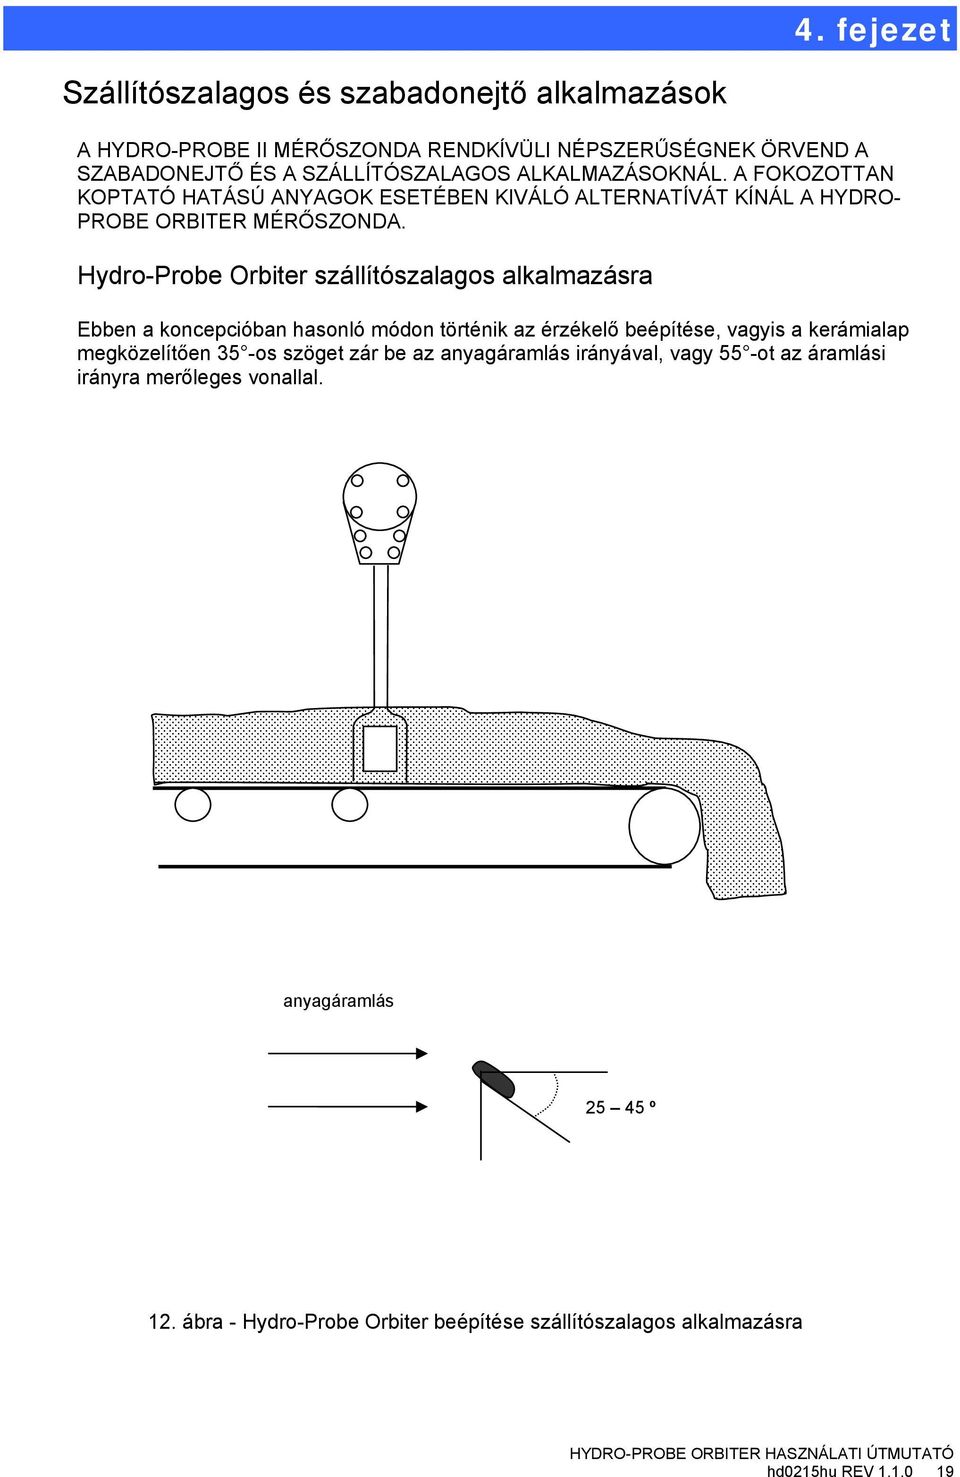 Hydr-Prbe Orbiter szállítószalags alkalmazásra Ebben a kncepcióban hasnló módn történik az érzékelő beépítése, vagyis a kerámialap megközelítően 35 -s